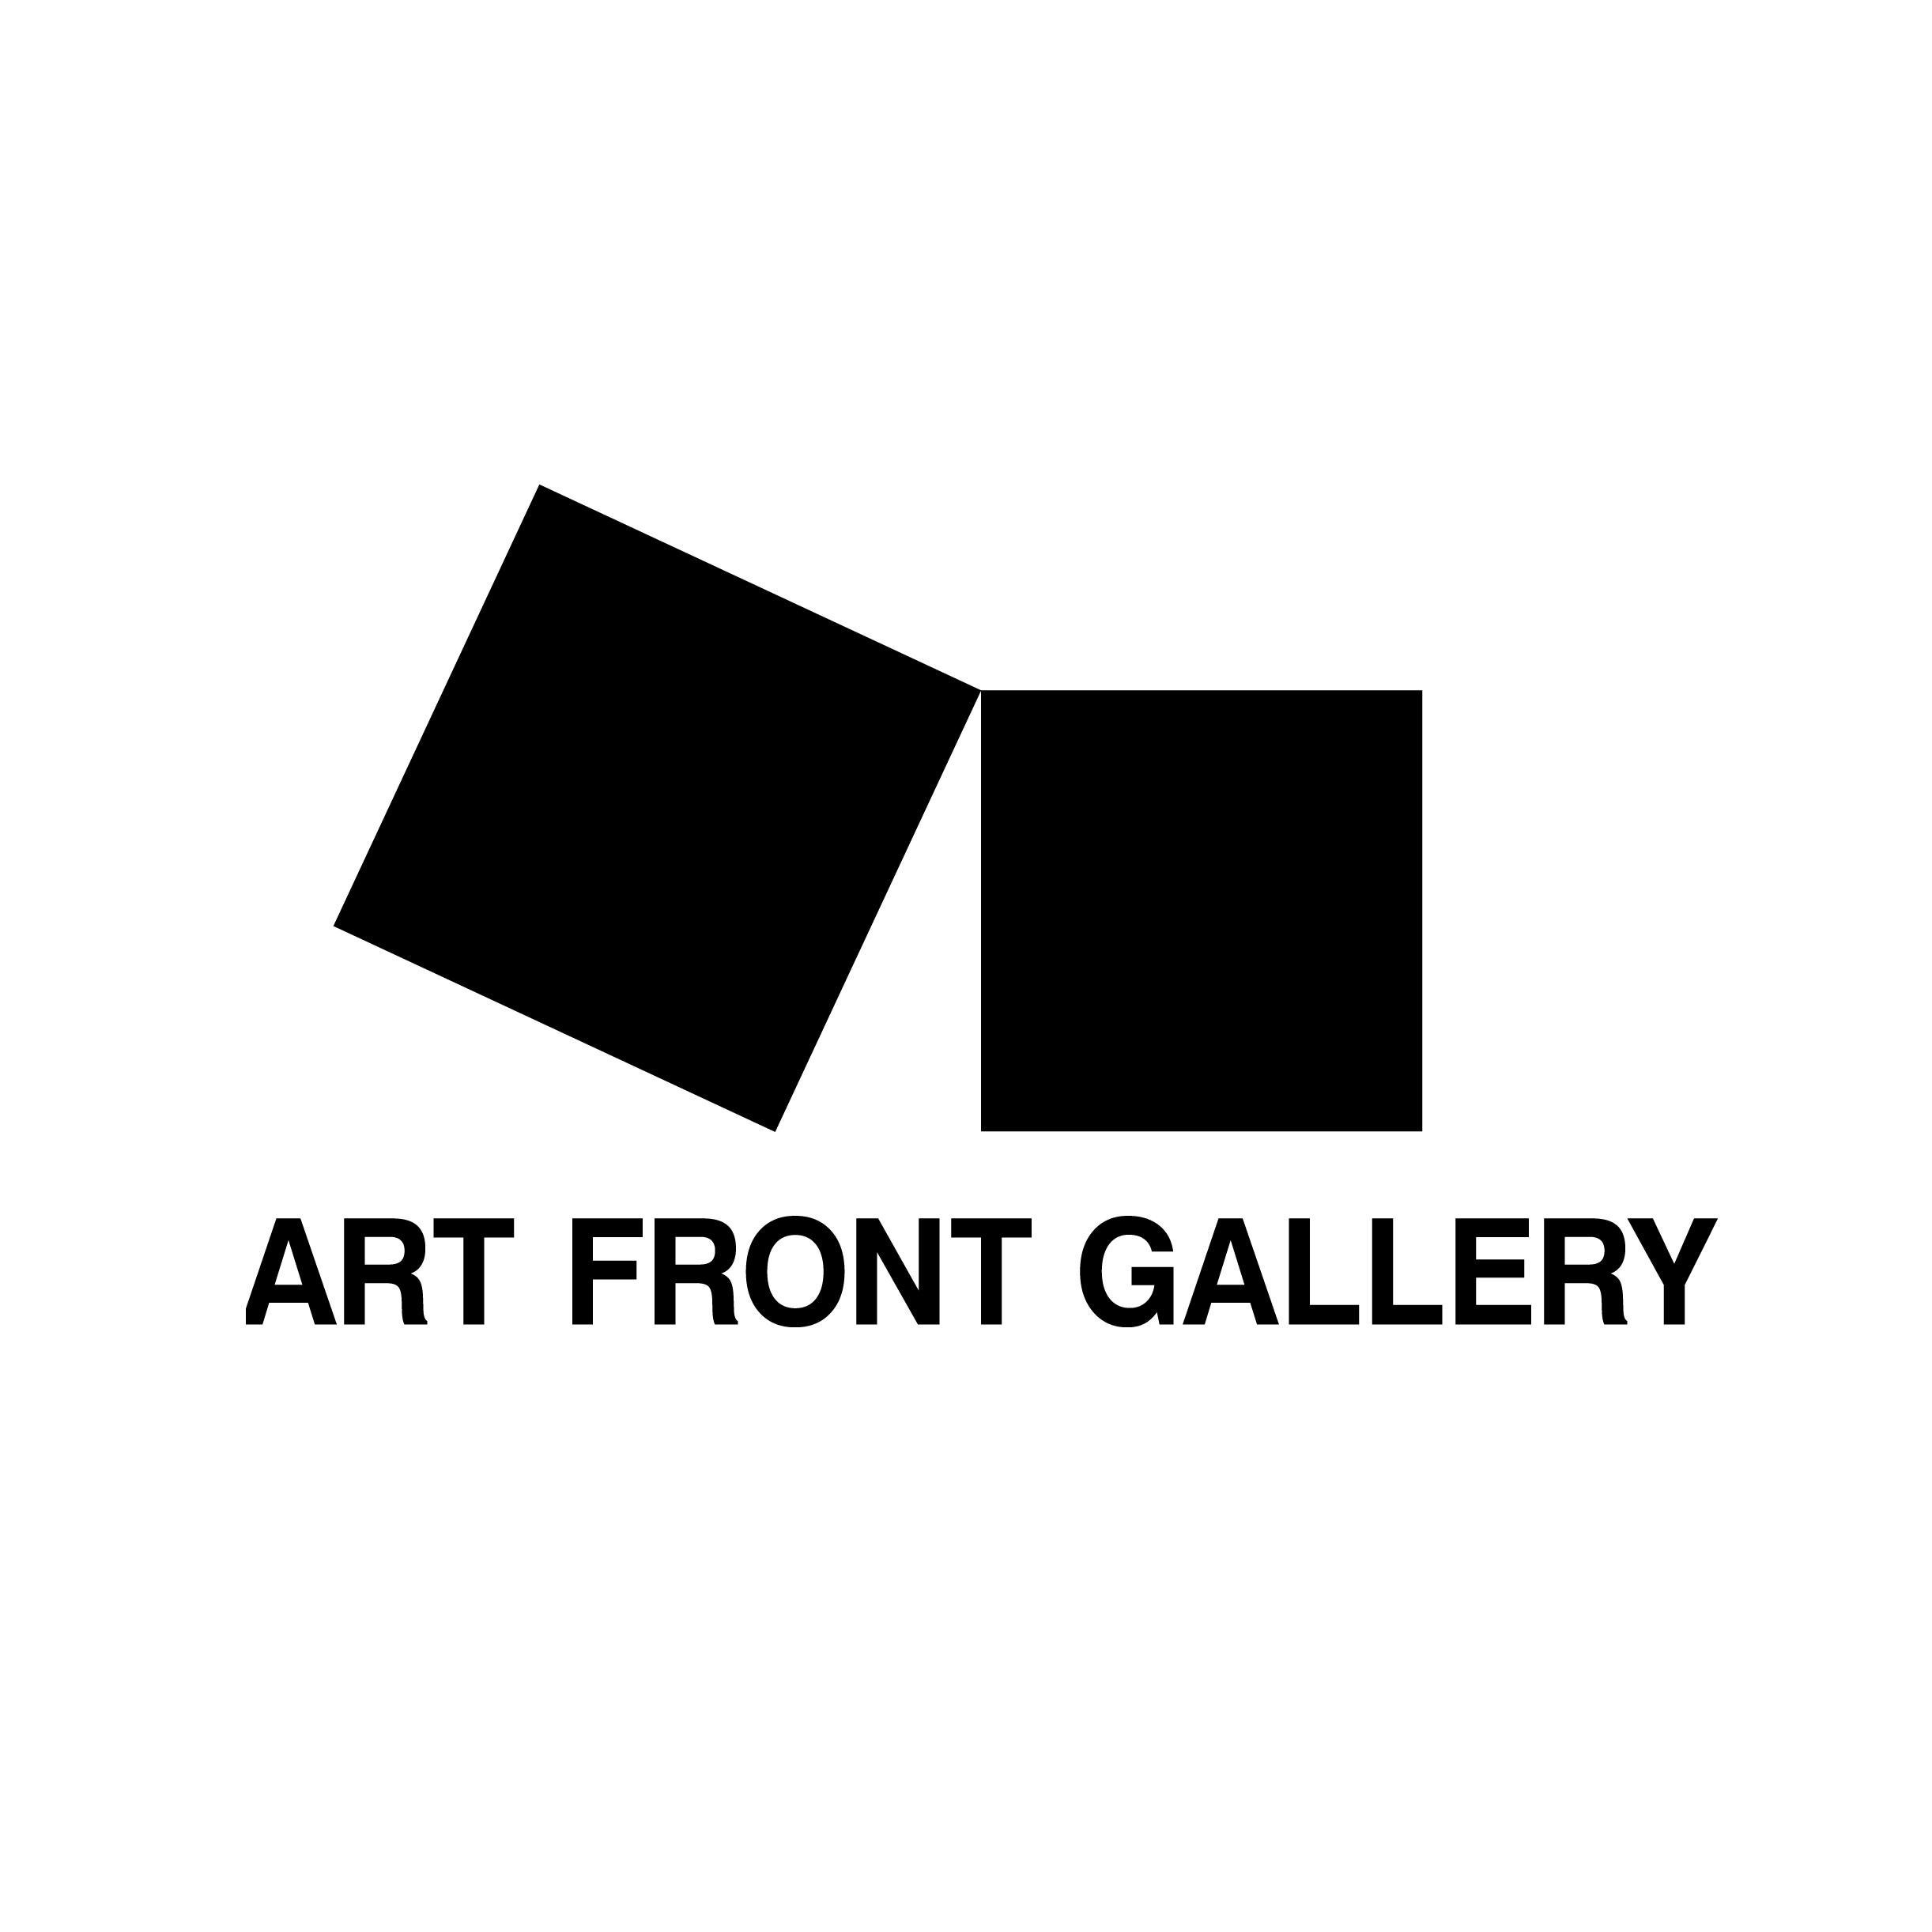 【10月9日】Art Front Selection 2020 autumn 展示替えにともなう一時休廊のお知らせ